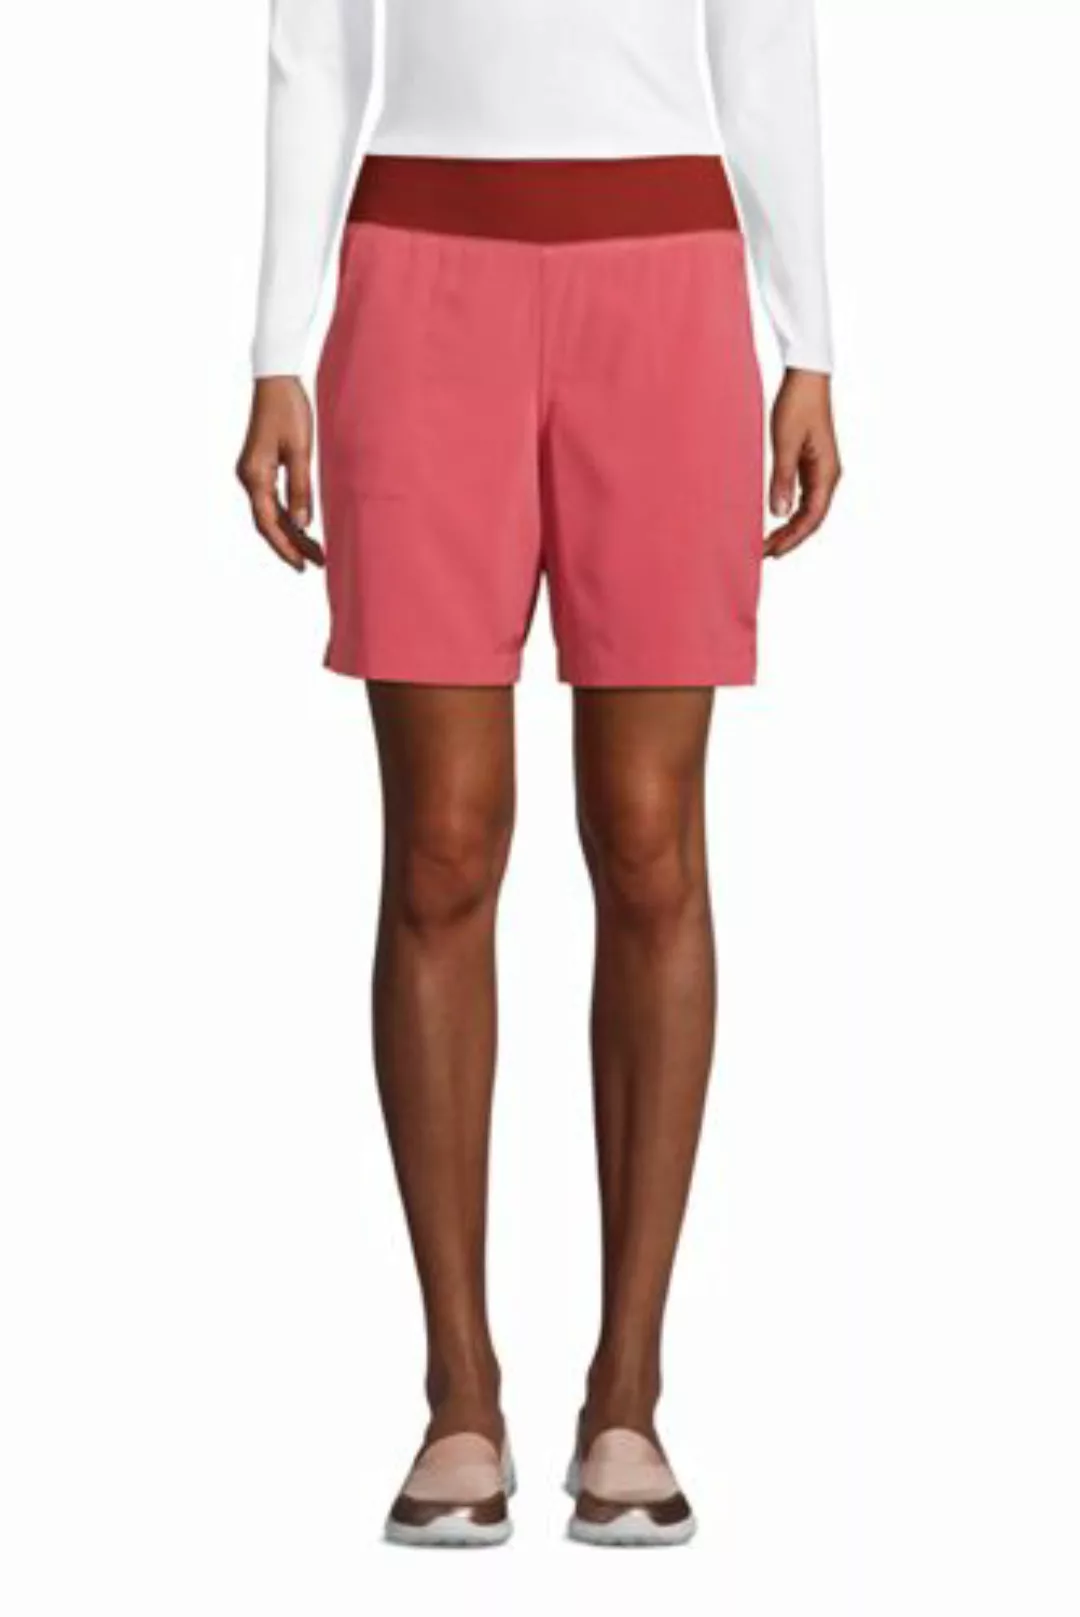 High Waist Shorts ACTIVE, Damen, Größe: S Normal, Rot, Polyester-Mischung, günstig online kaufen